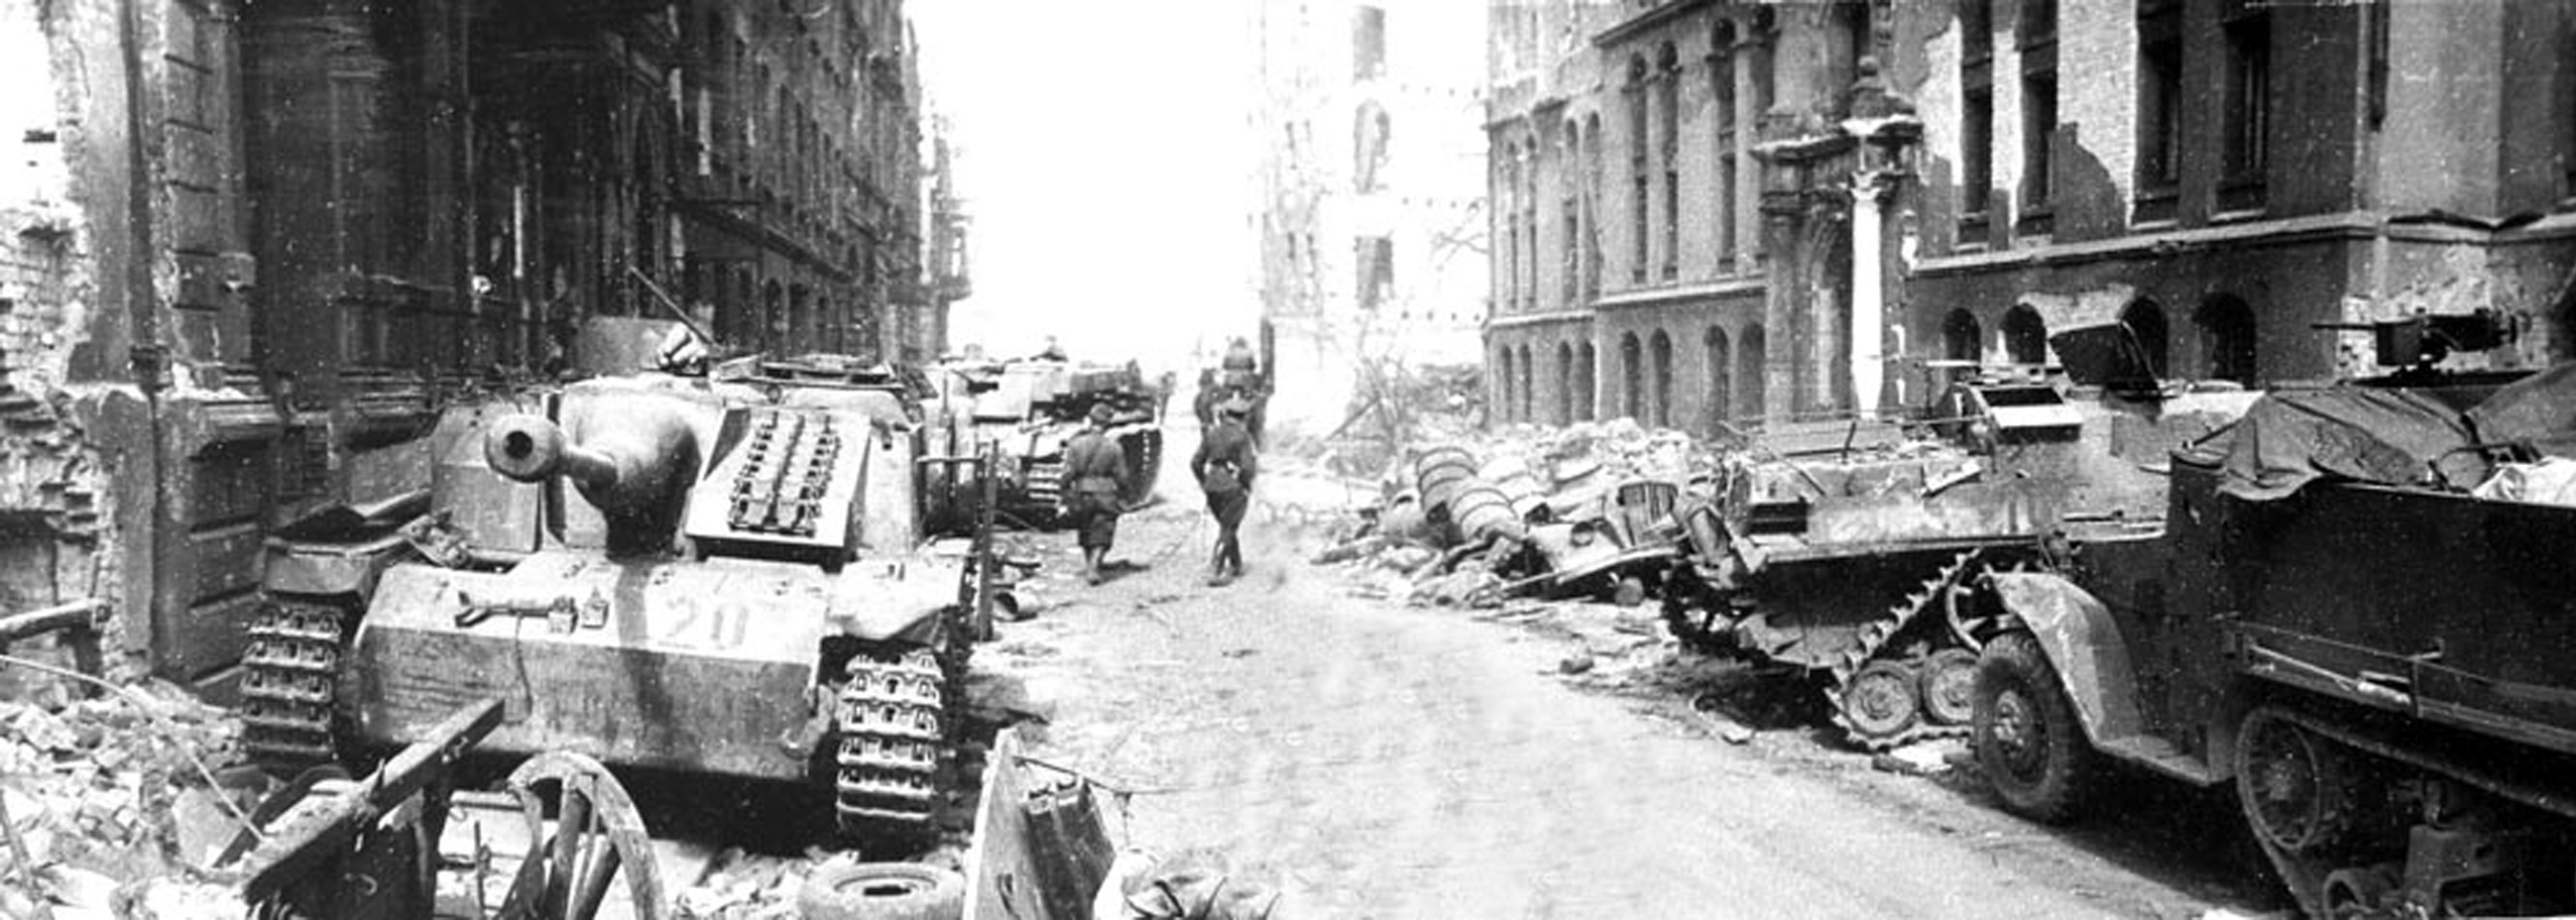 Немецкая техника на улице Миттельтрагхайм в Кенигсберге после штурма